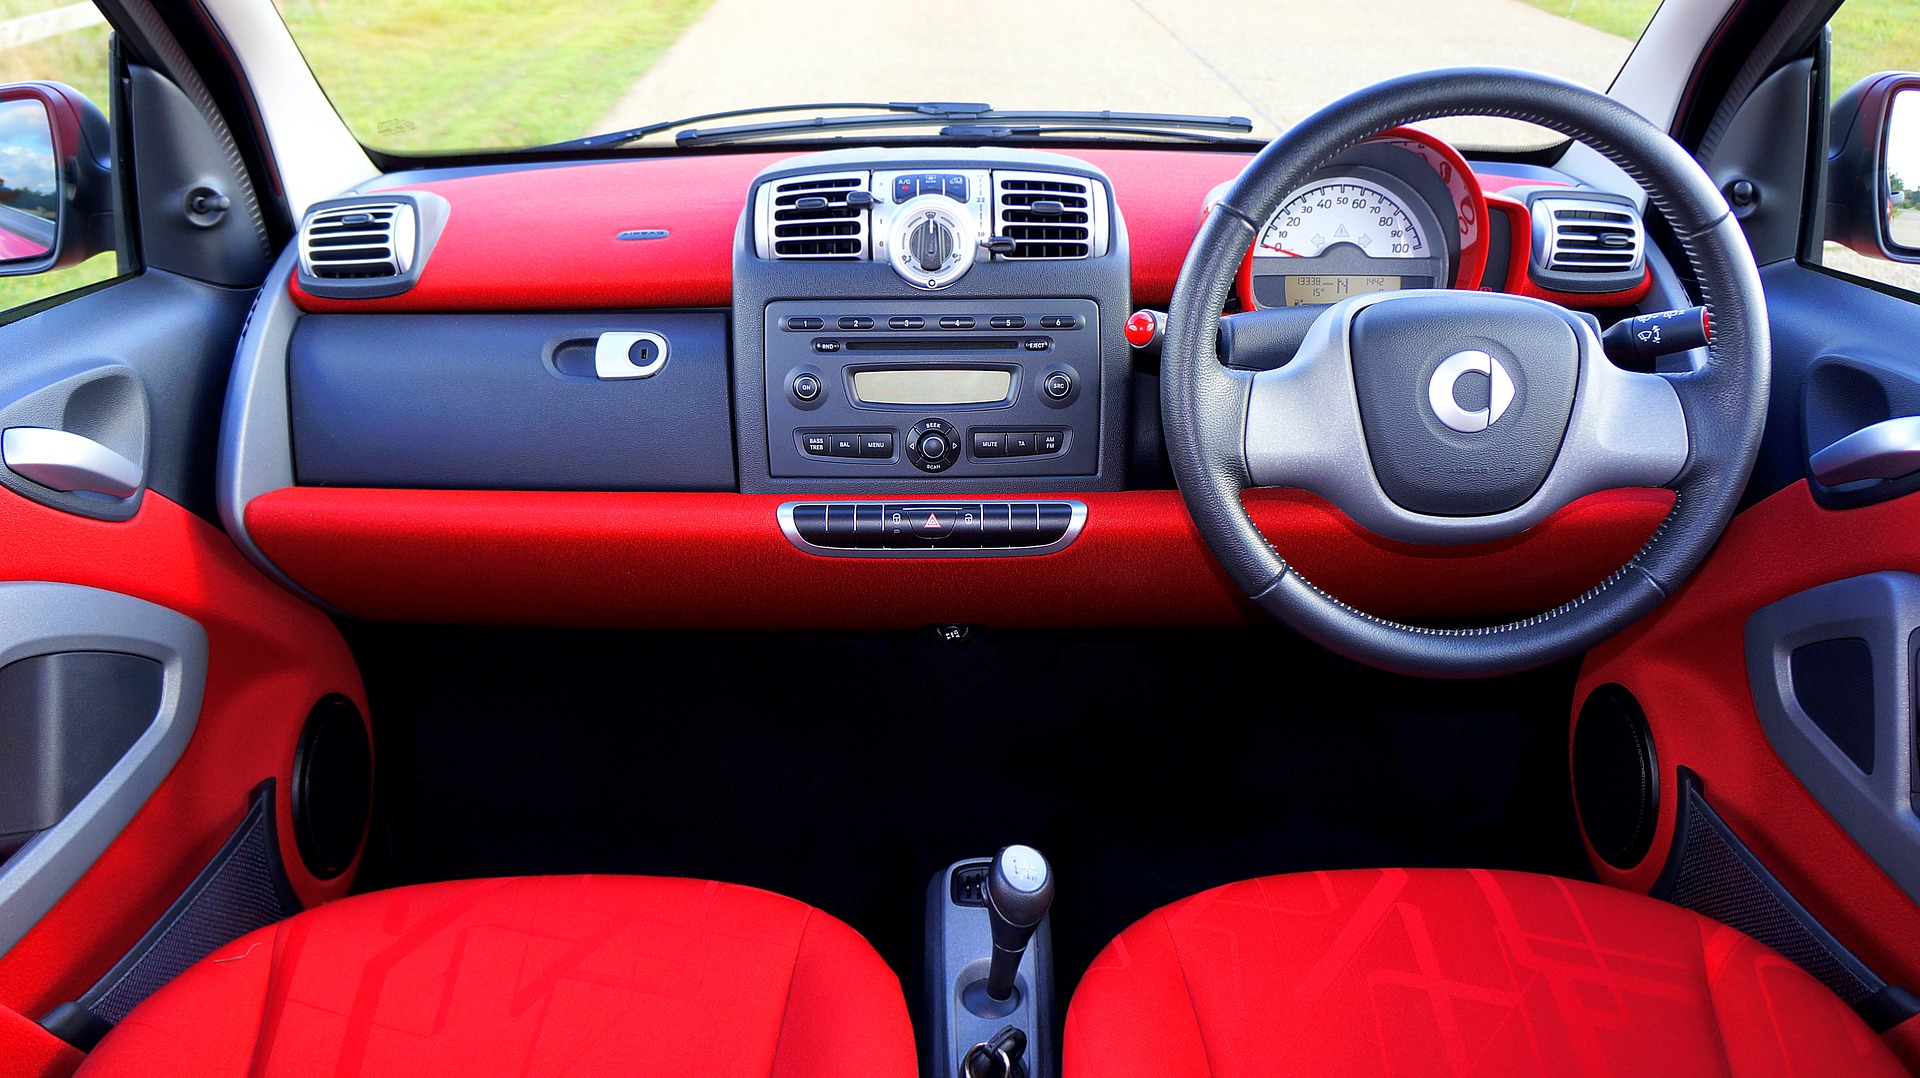 Panel under steering wheel